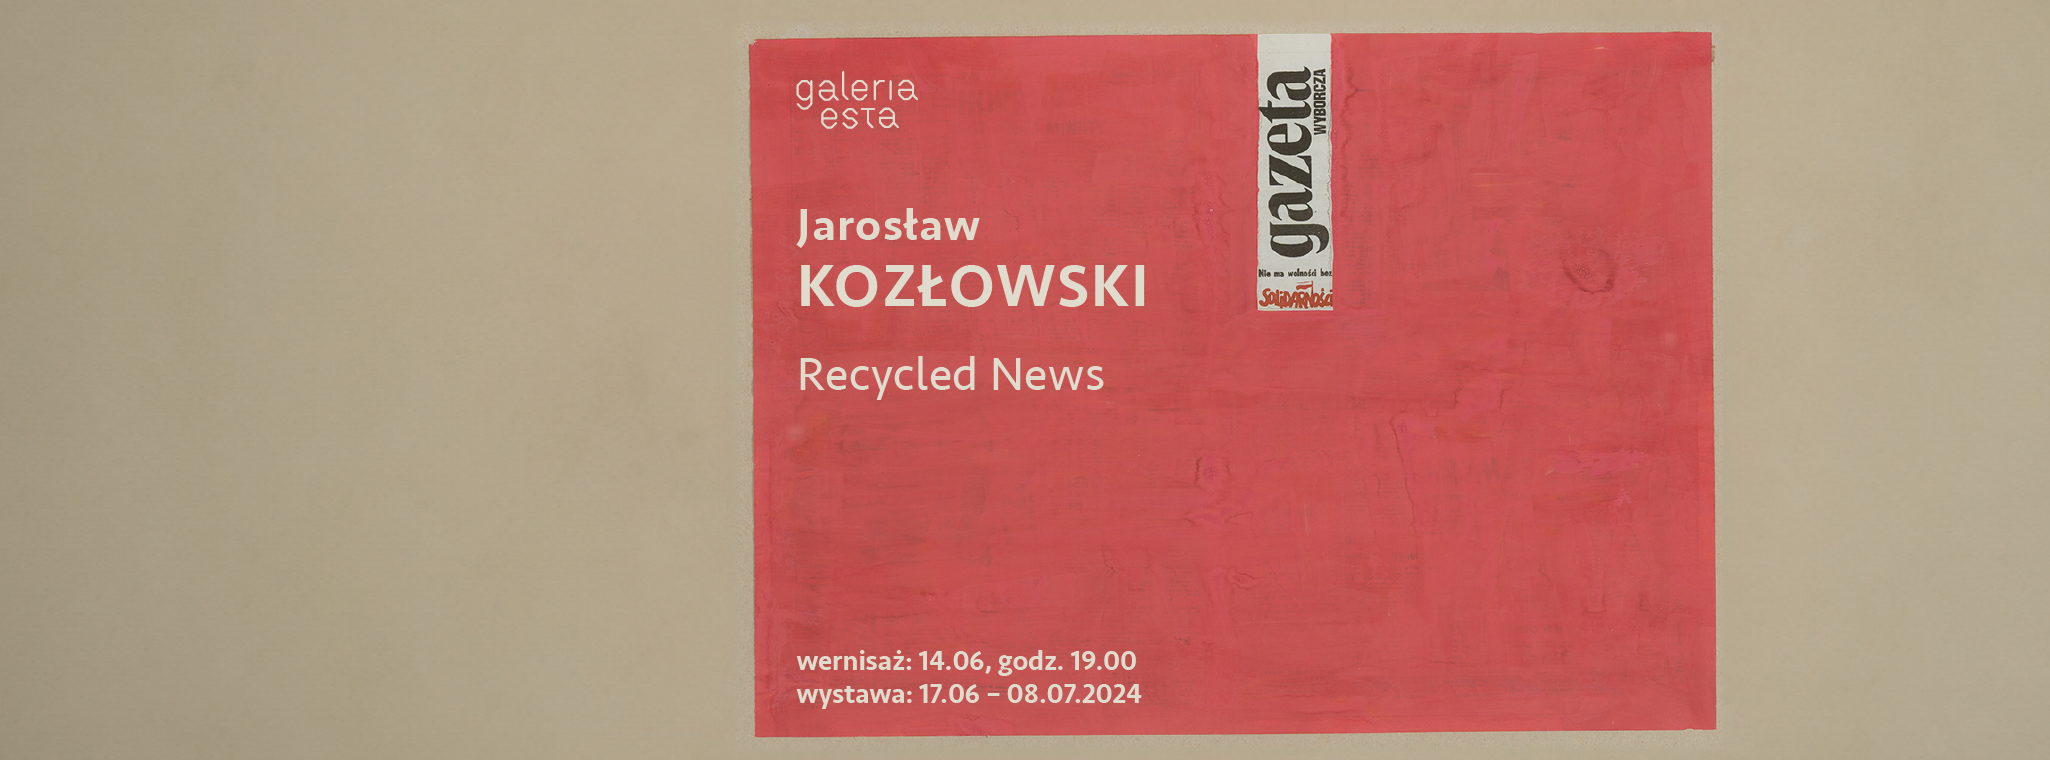 Jarosław Kozłowski